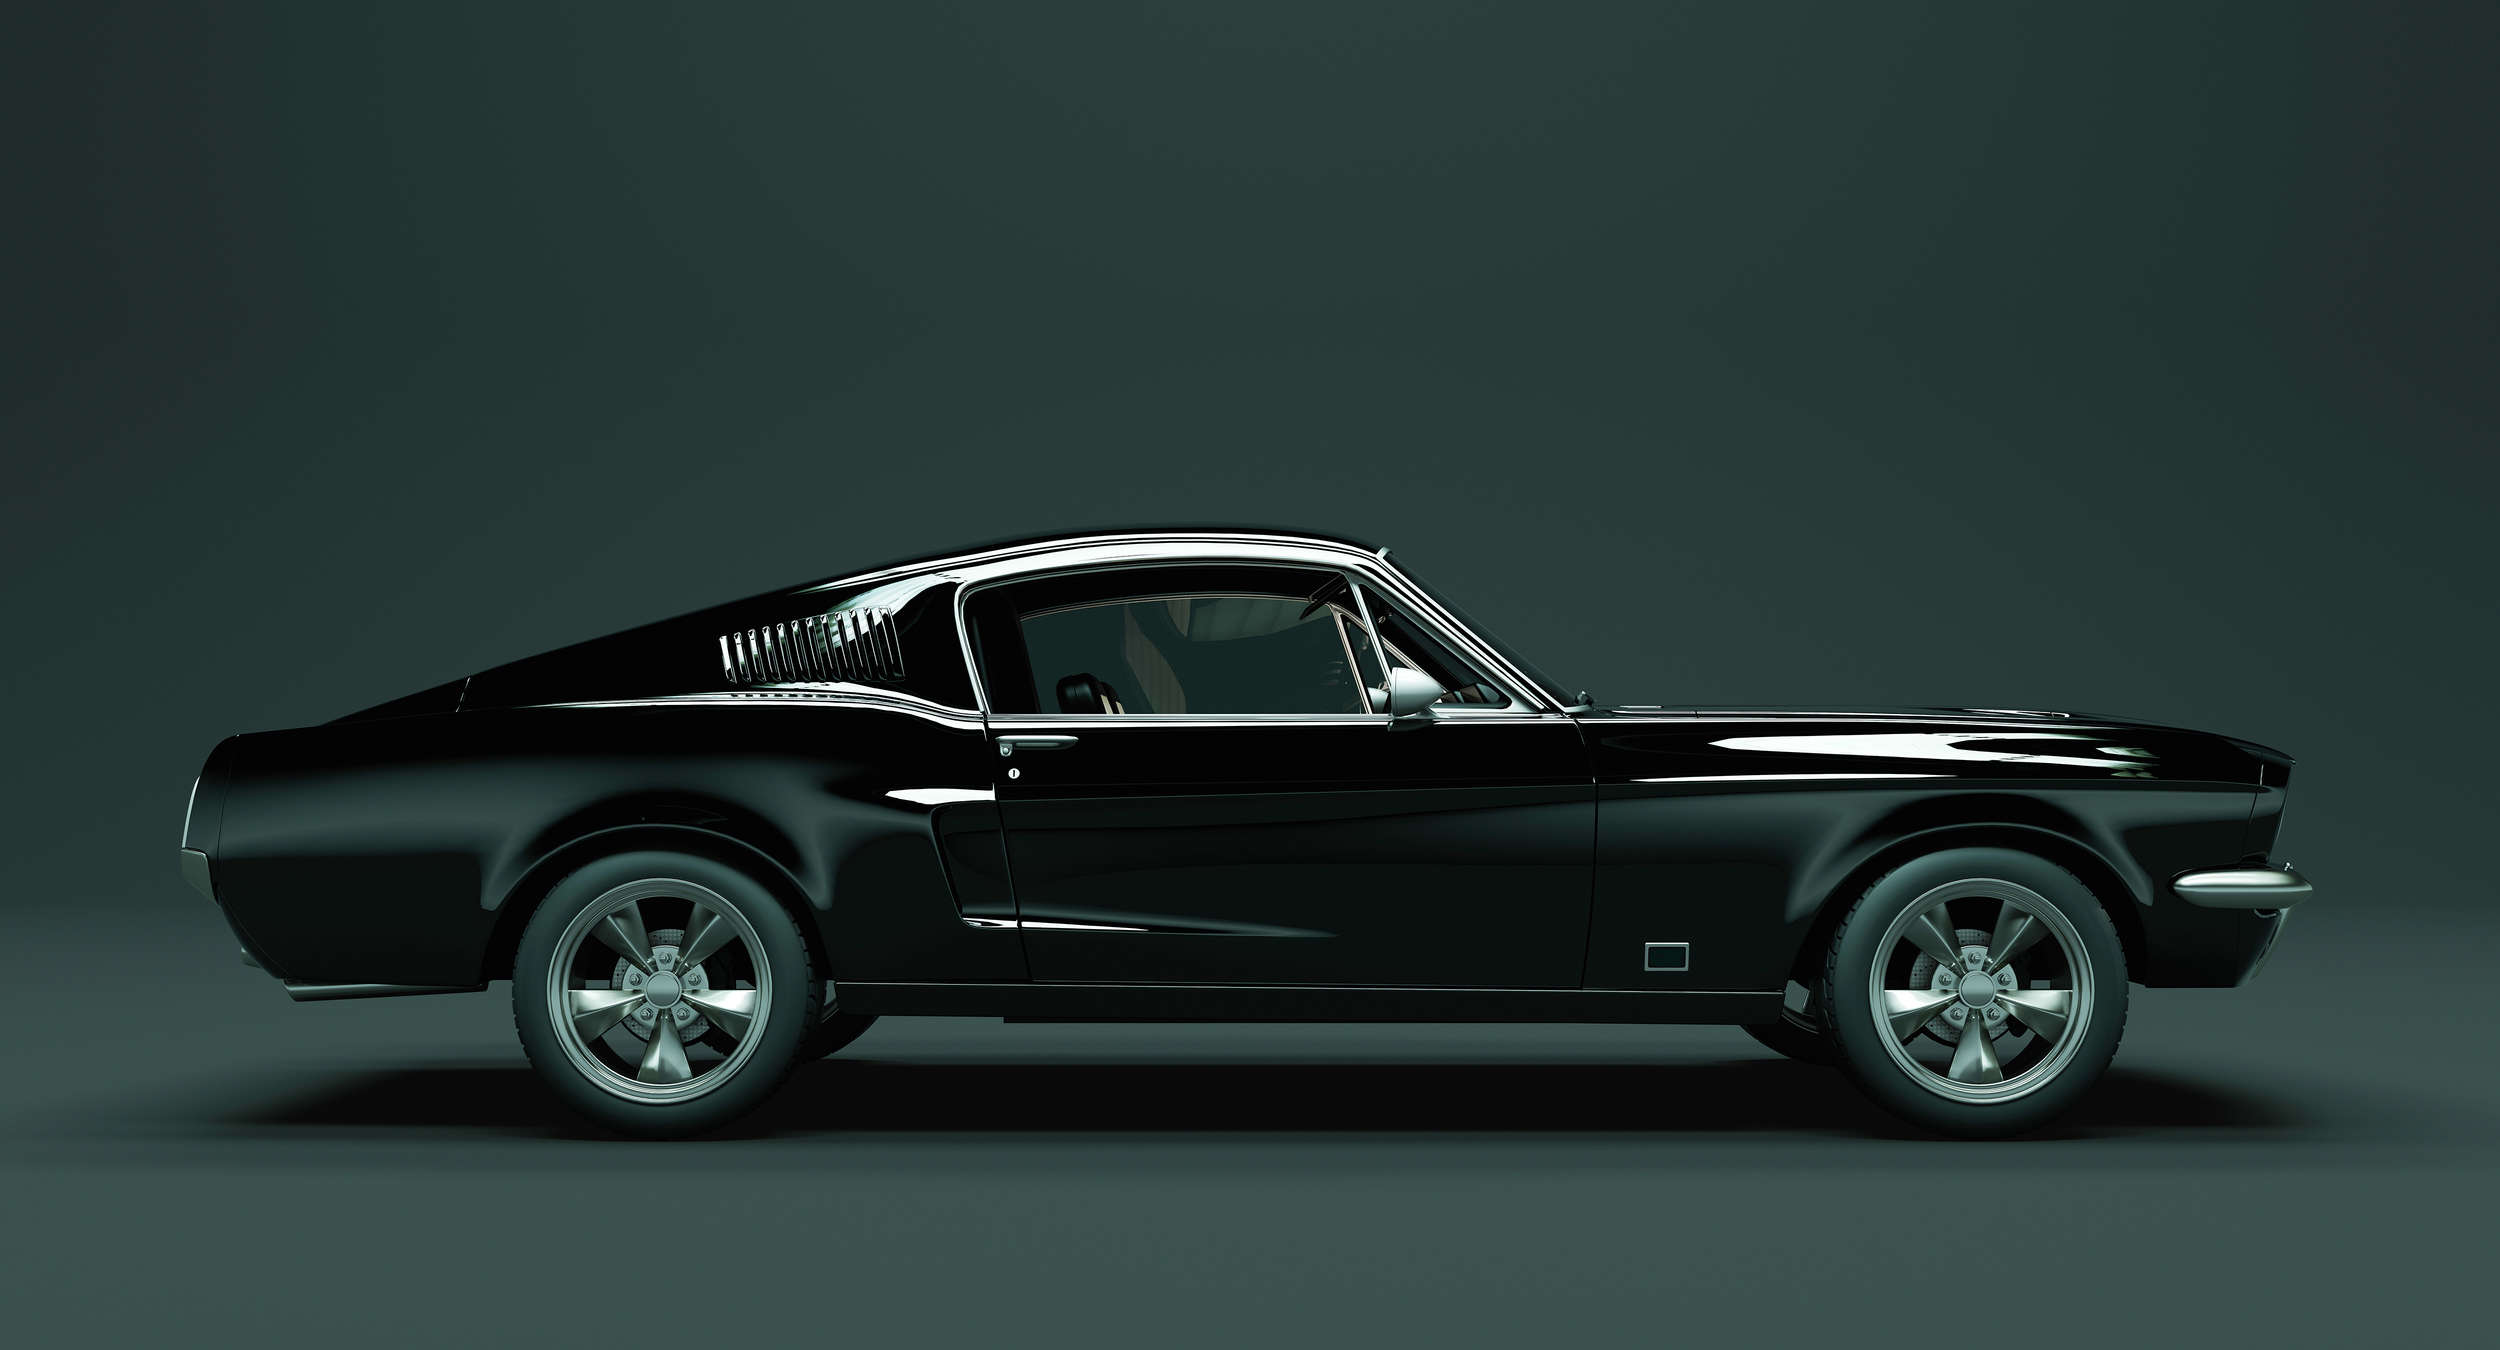             Mustang 1 - Digital behang, Mustang zijaanzicht, Vintage - Blauw, Zwart | Pearl gladde fleece
        